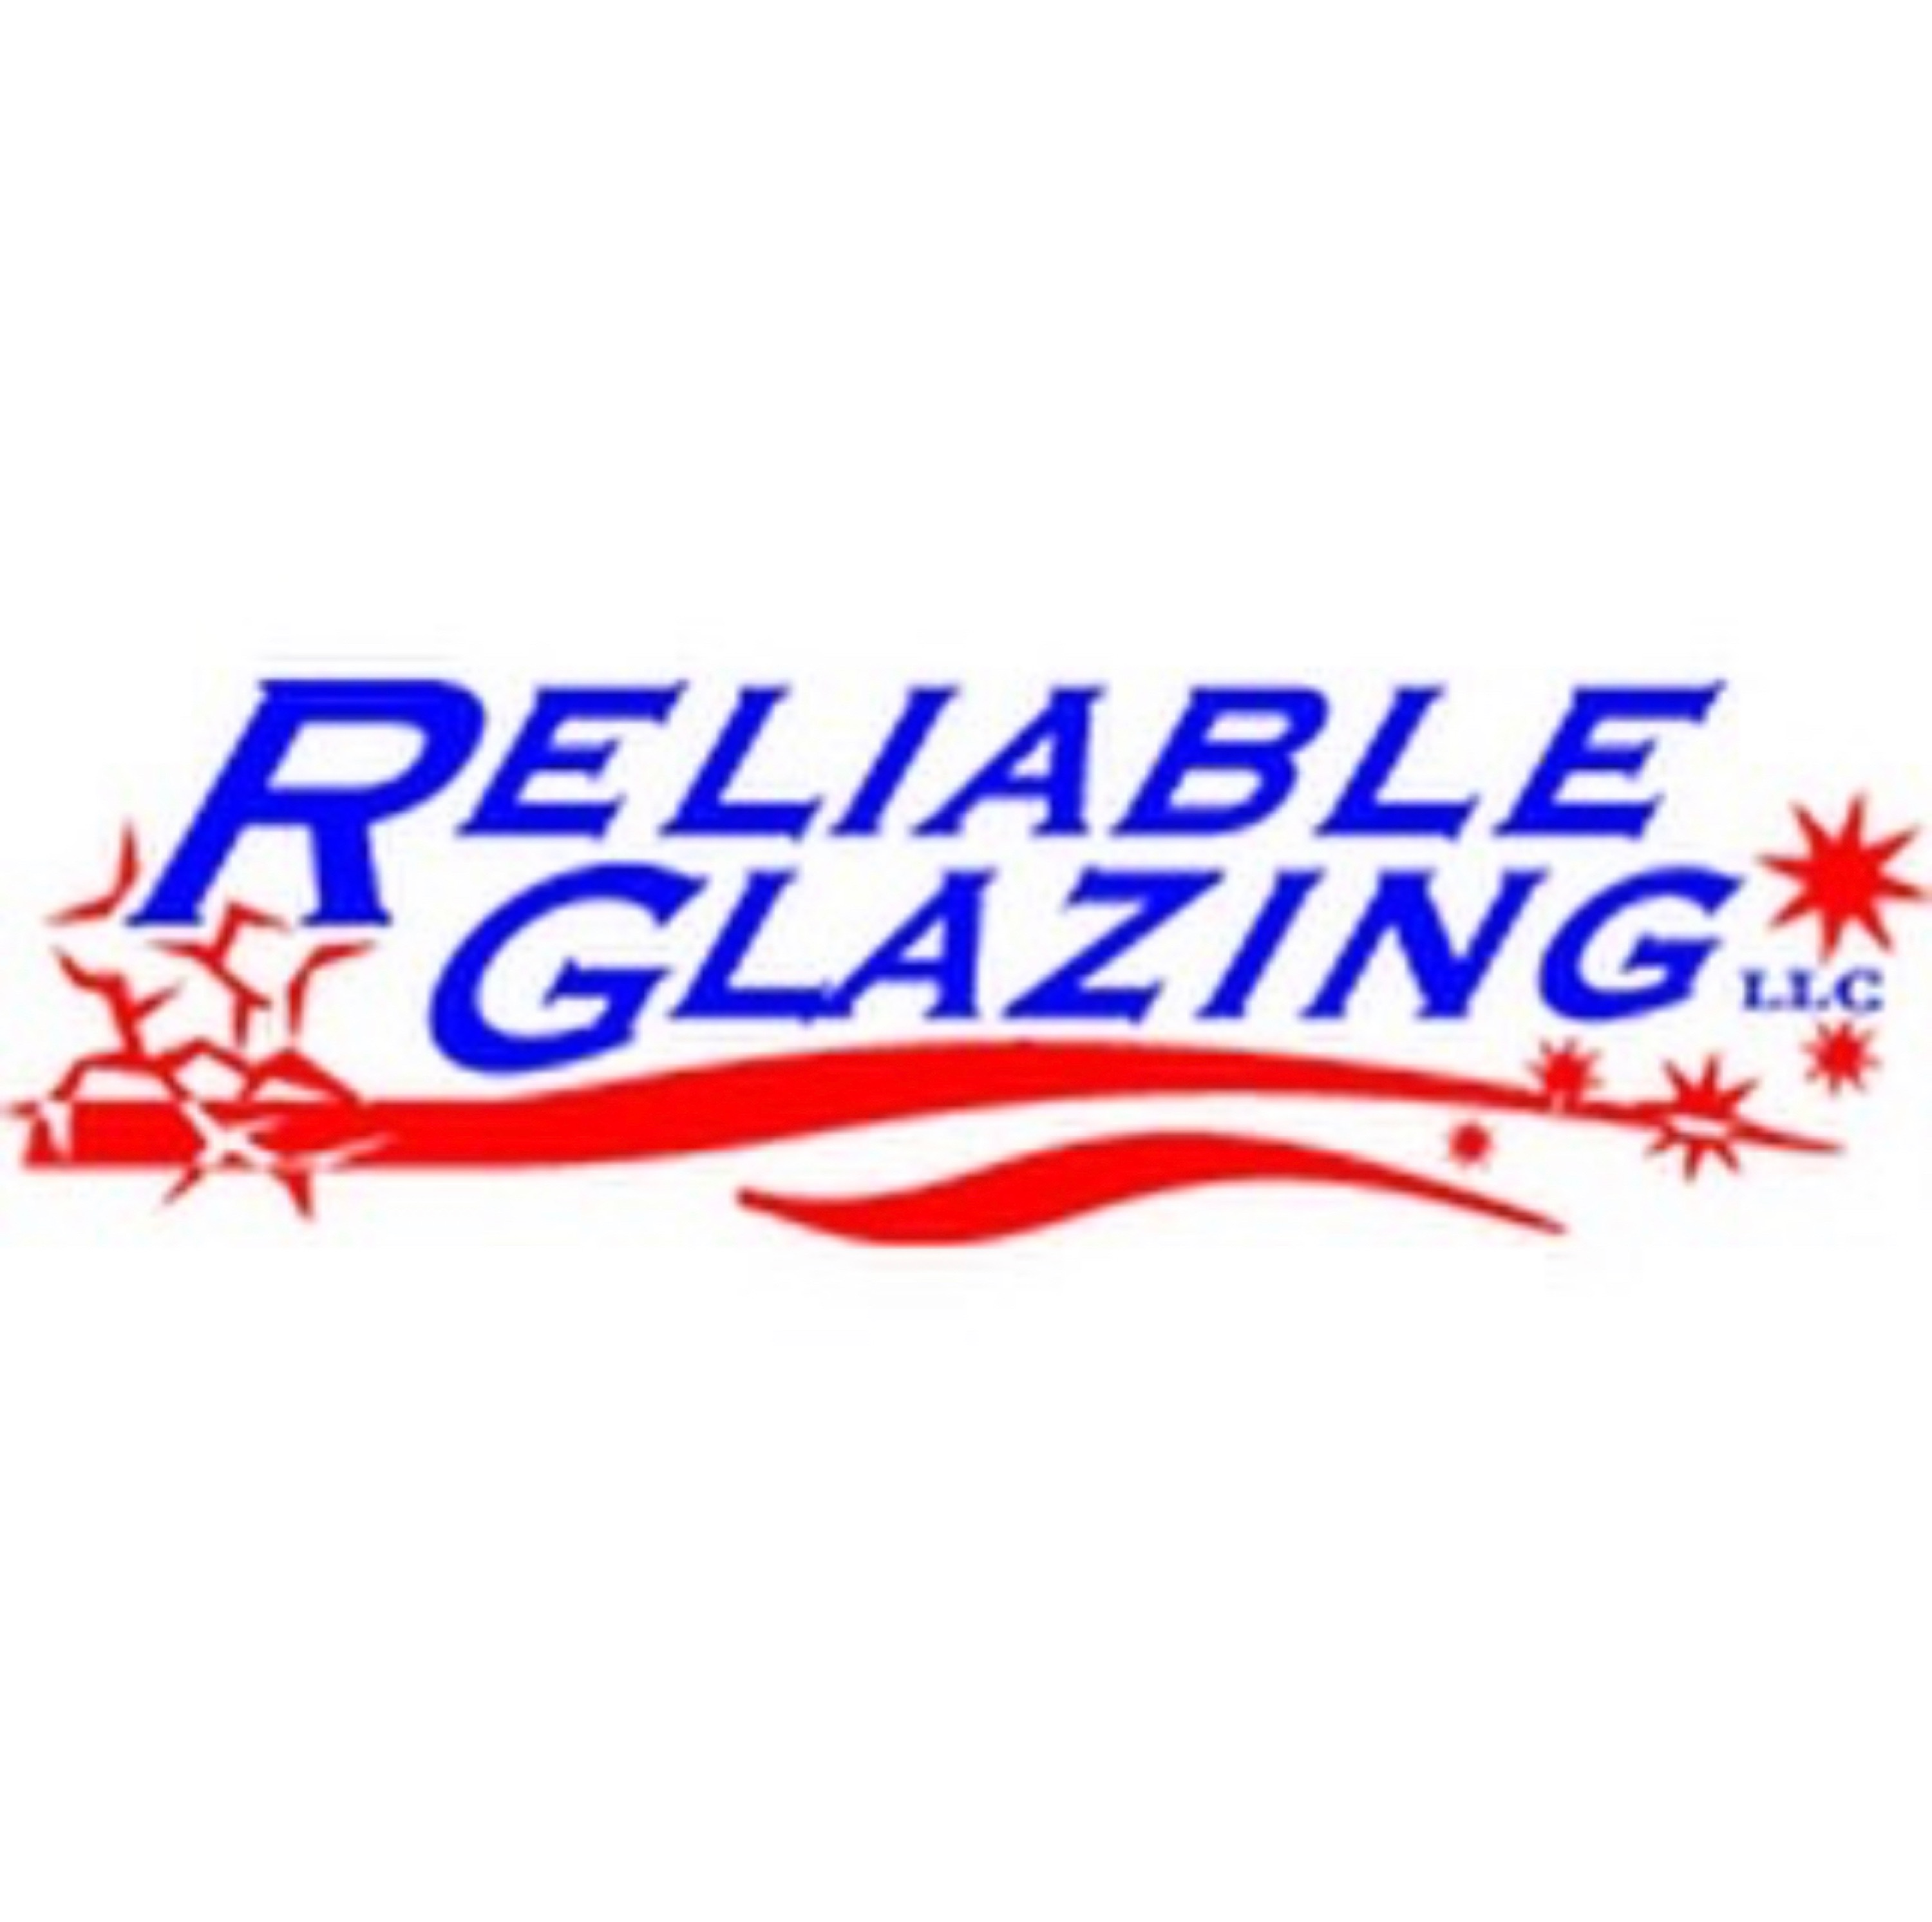 Dragonfly Glazing, LLC Logo